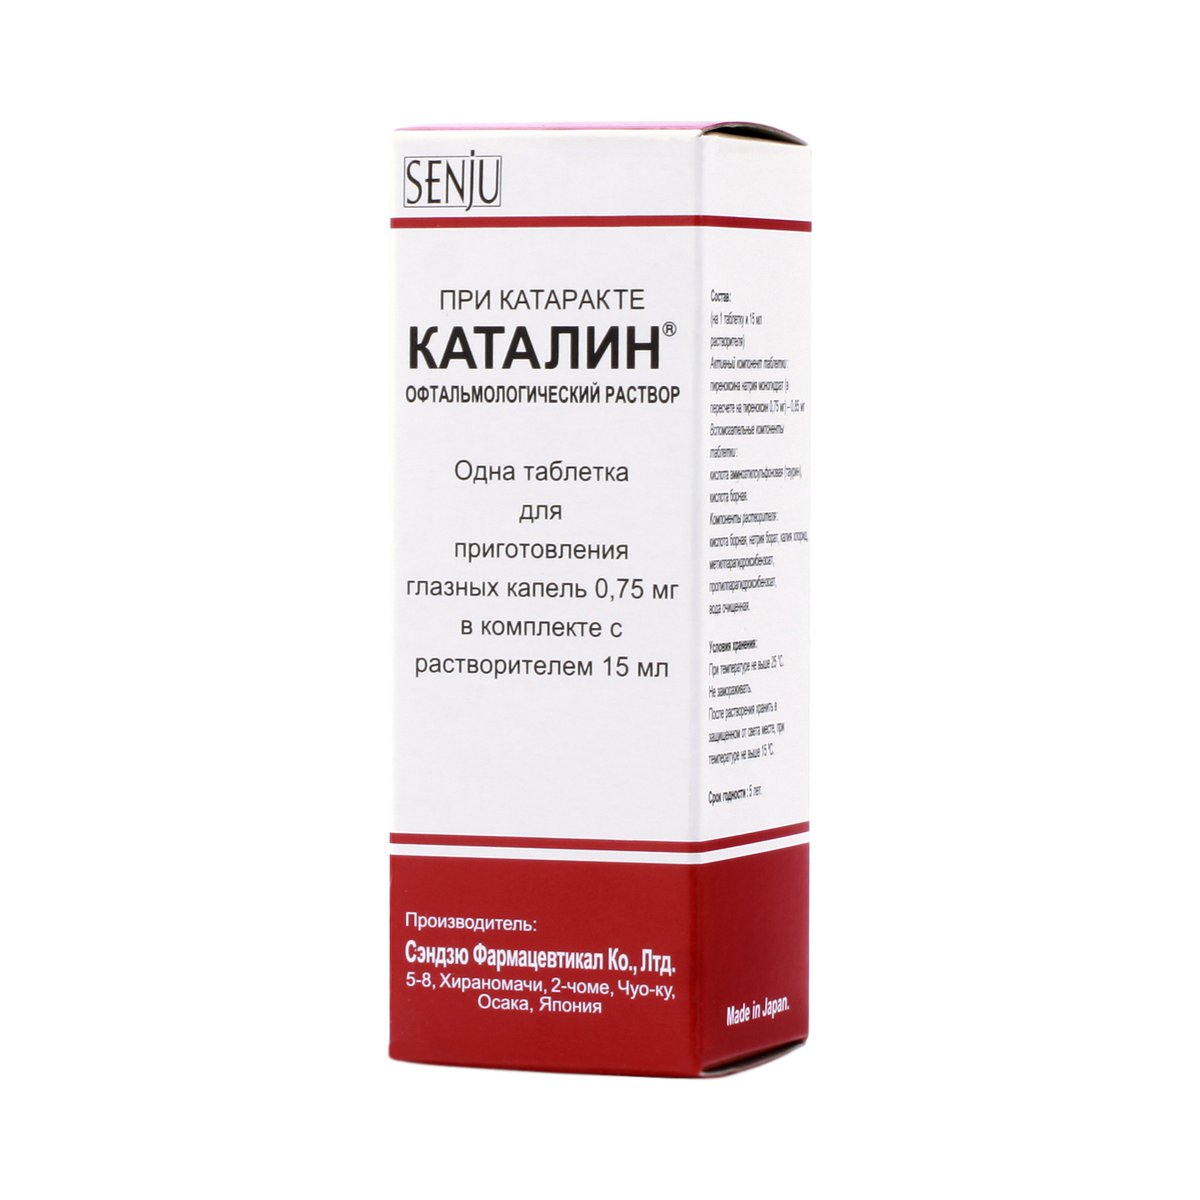 Каталин (таблетки, 15 мл, 0,75 мг) - цена,  онлайн  .